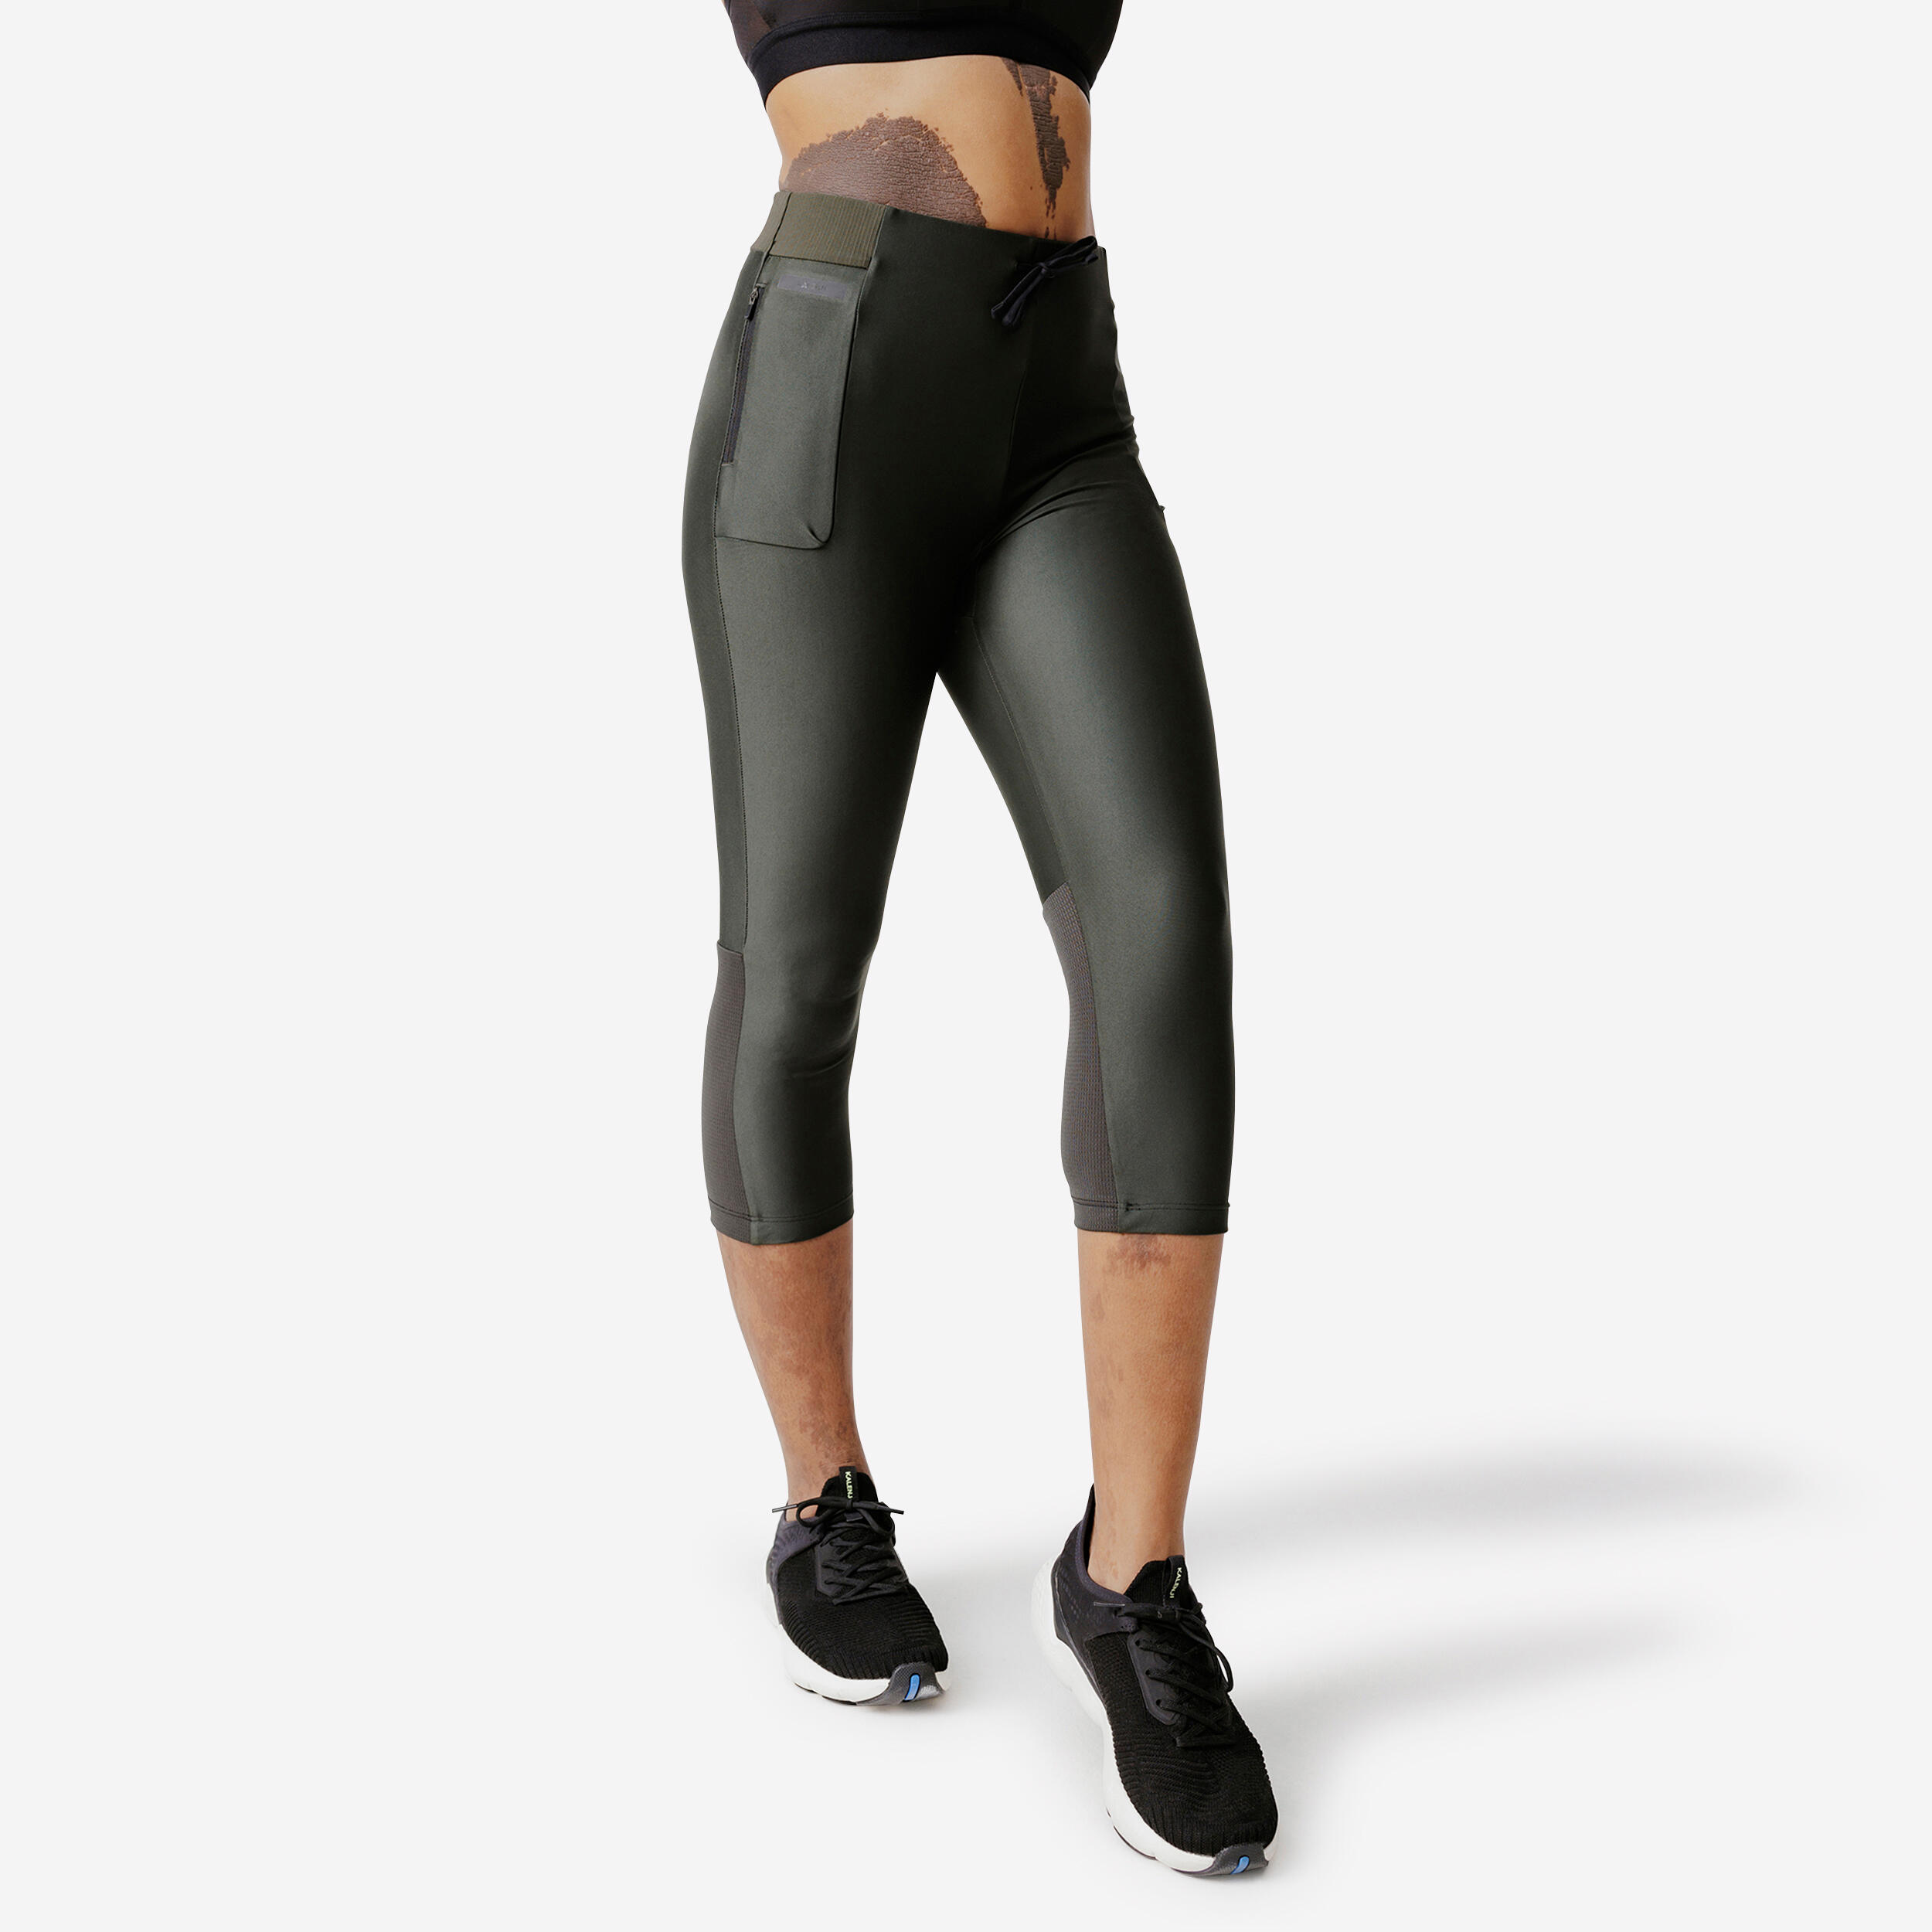 Women's long running leggings Dry - black - Decathlon